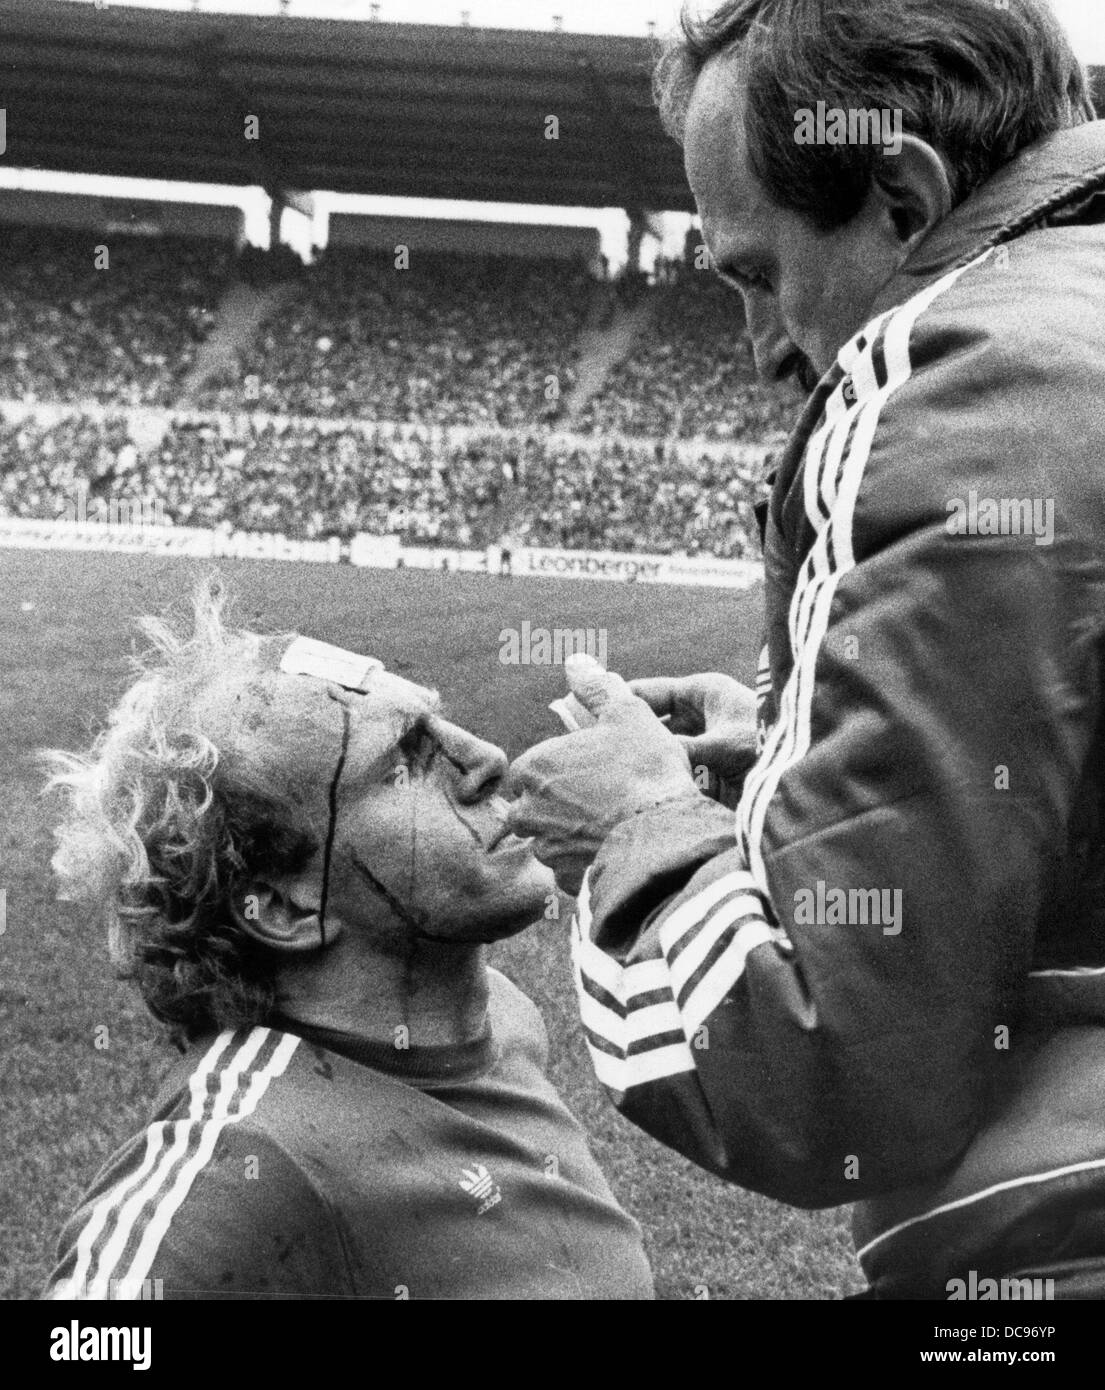 Stürmer des FC Bayern München Dieter Hoeneß (l) wird am 1. Mai 1982 an der Seite des Feldes behandelt. Stockfoto